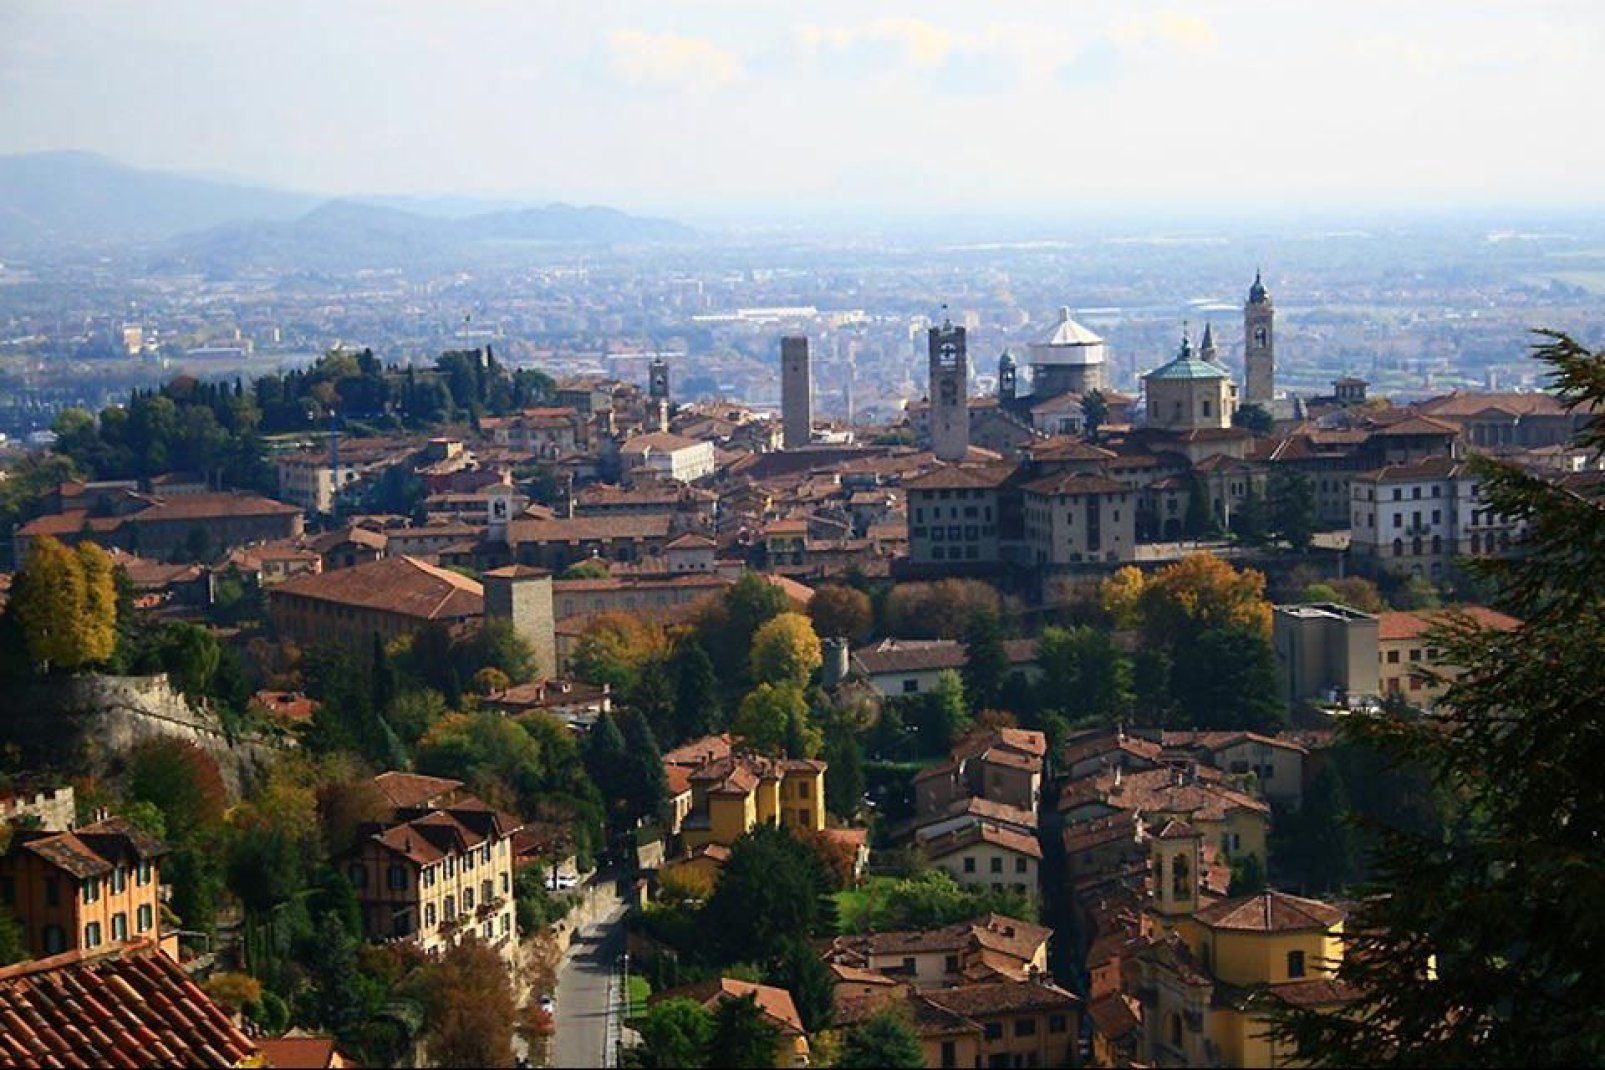 Die Stadt Bergamo, die zwischen der Tiefebene und den Anhöhen der Bergamasker Alpen angesiedelt ist, besteht aus zwei klar abgetrennten Teilen: die Oberstadt mit dem historischen Zentrum und die moderne Unterstadt.